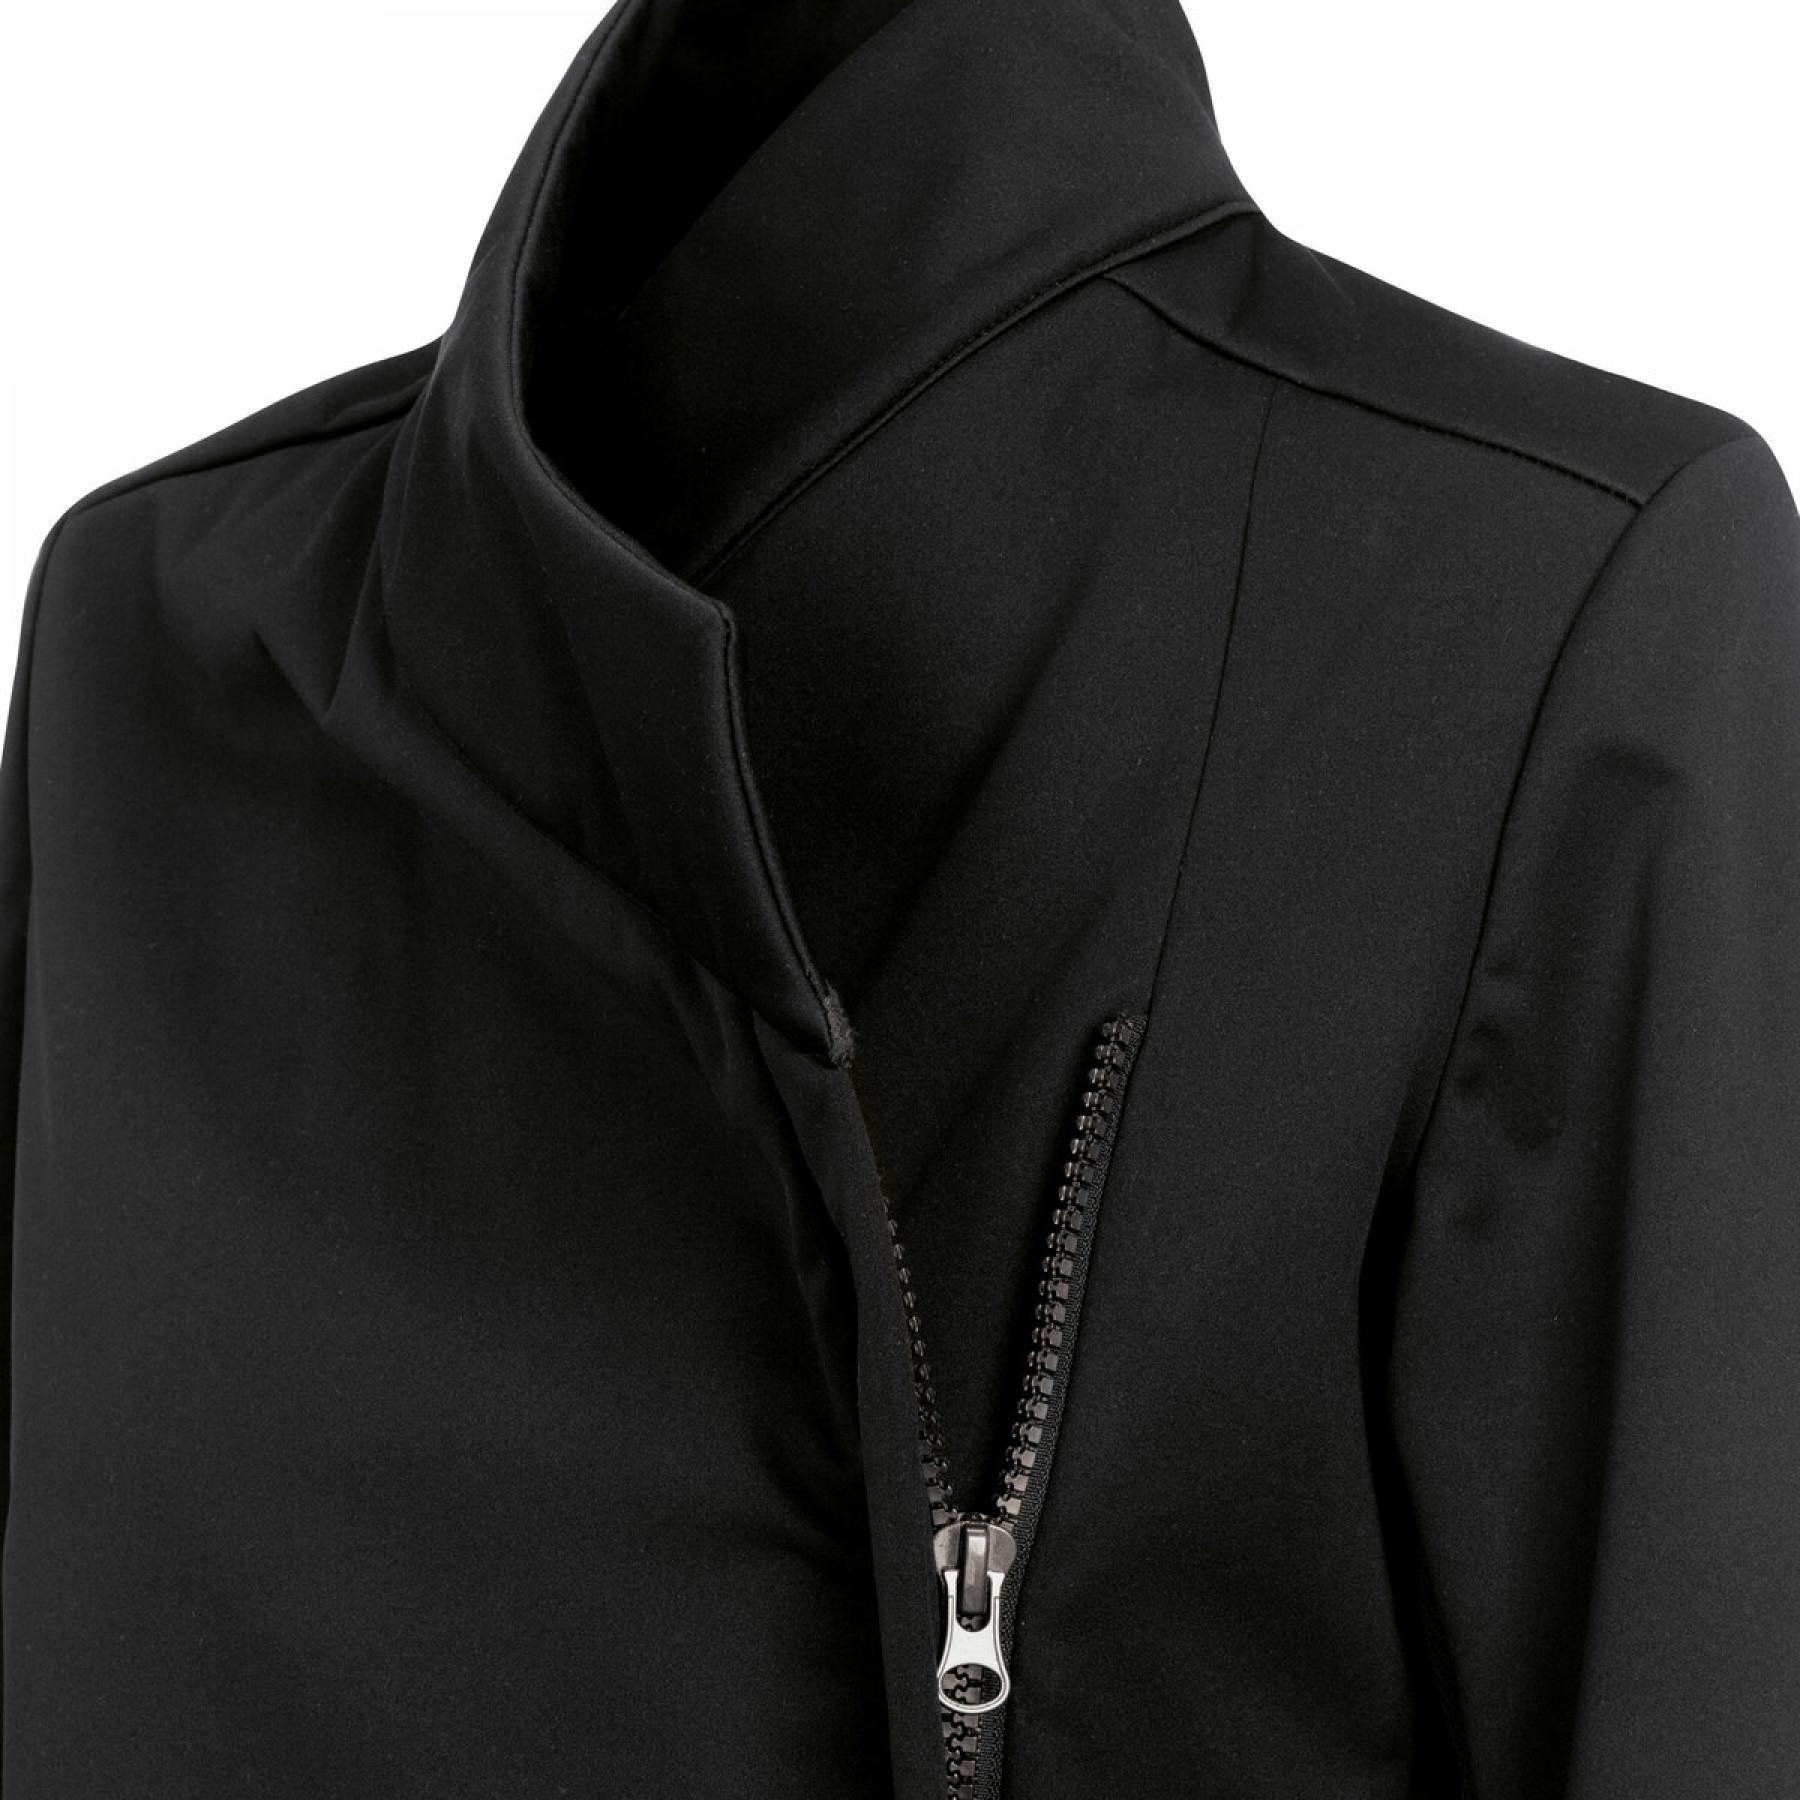 Women's jacket Errea hybrid rplc